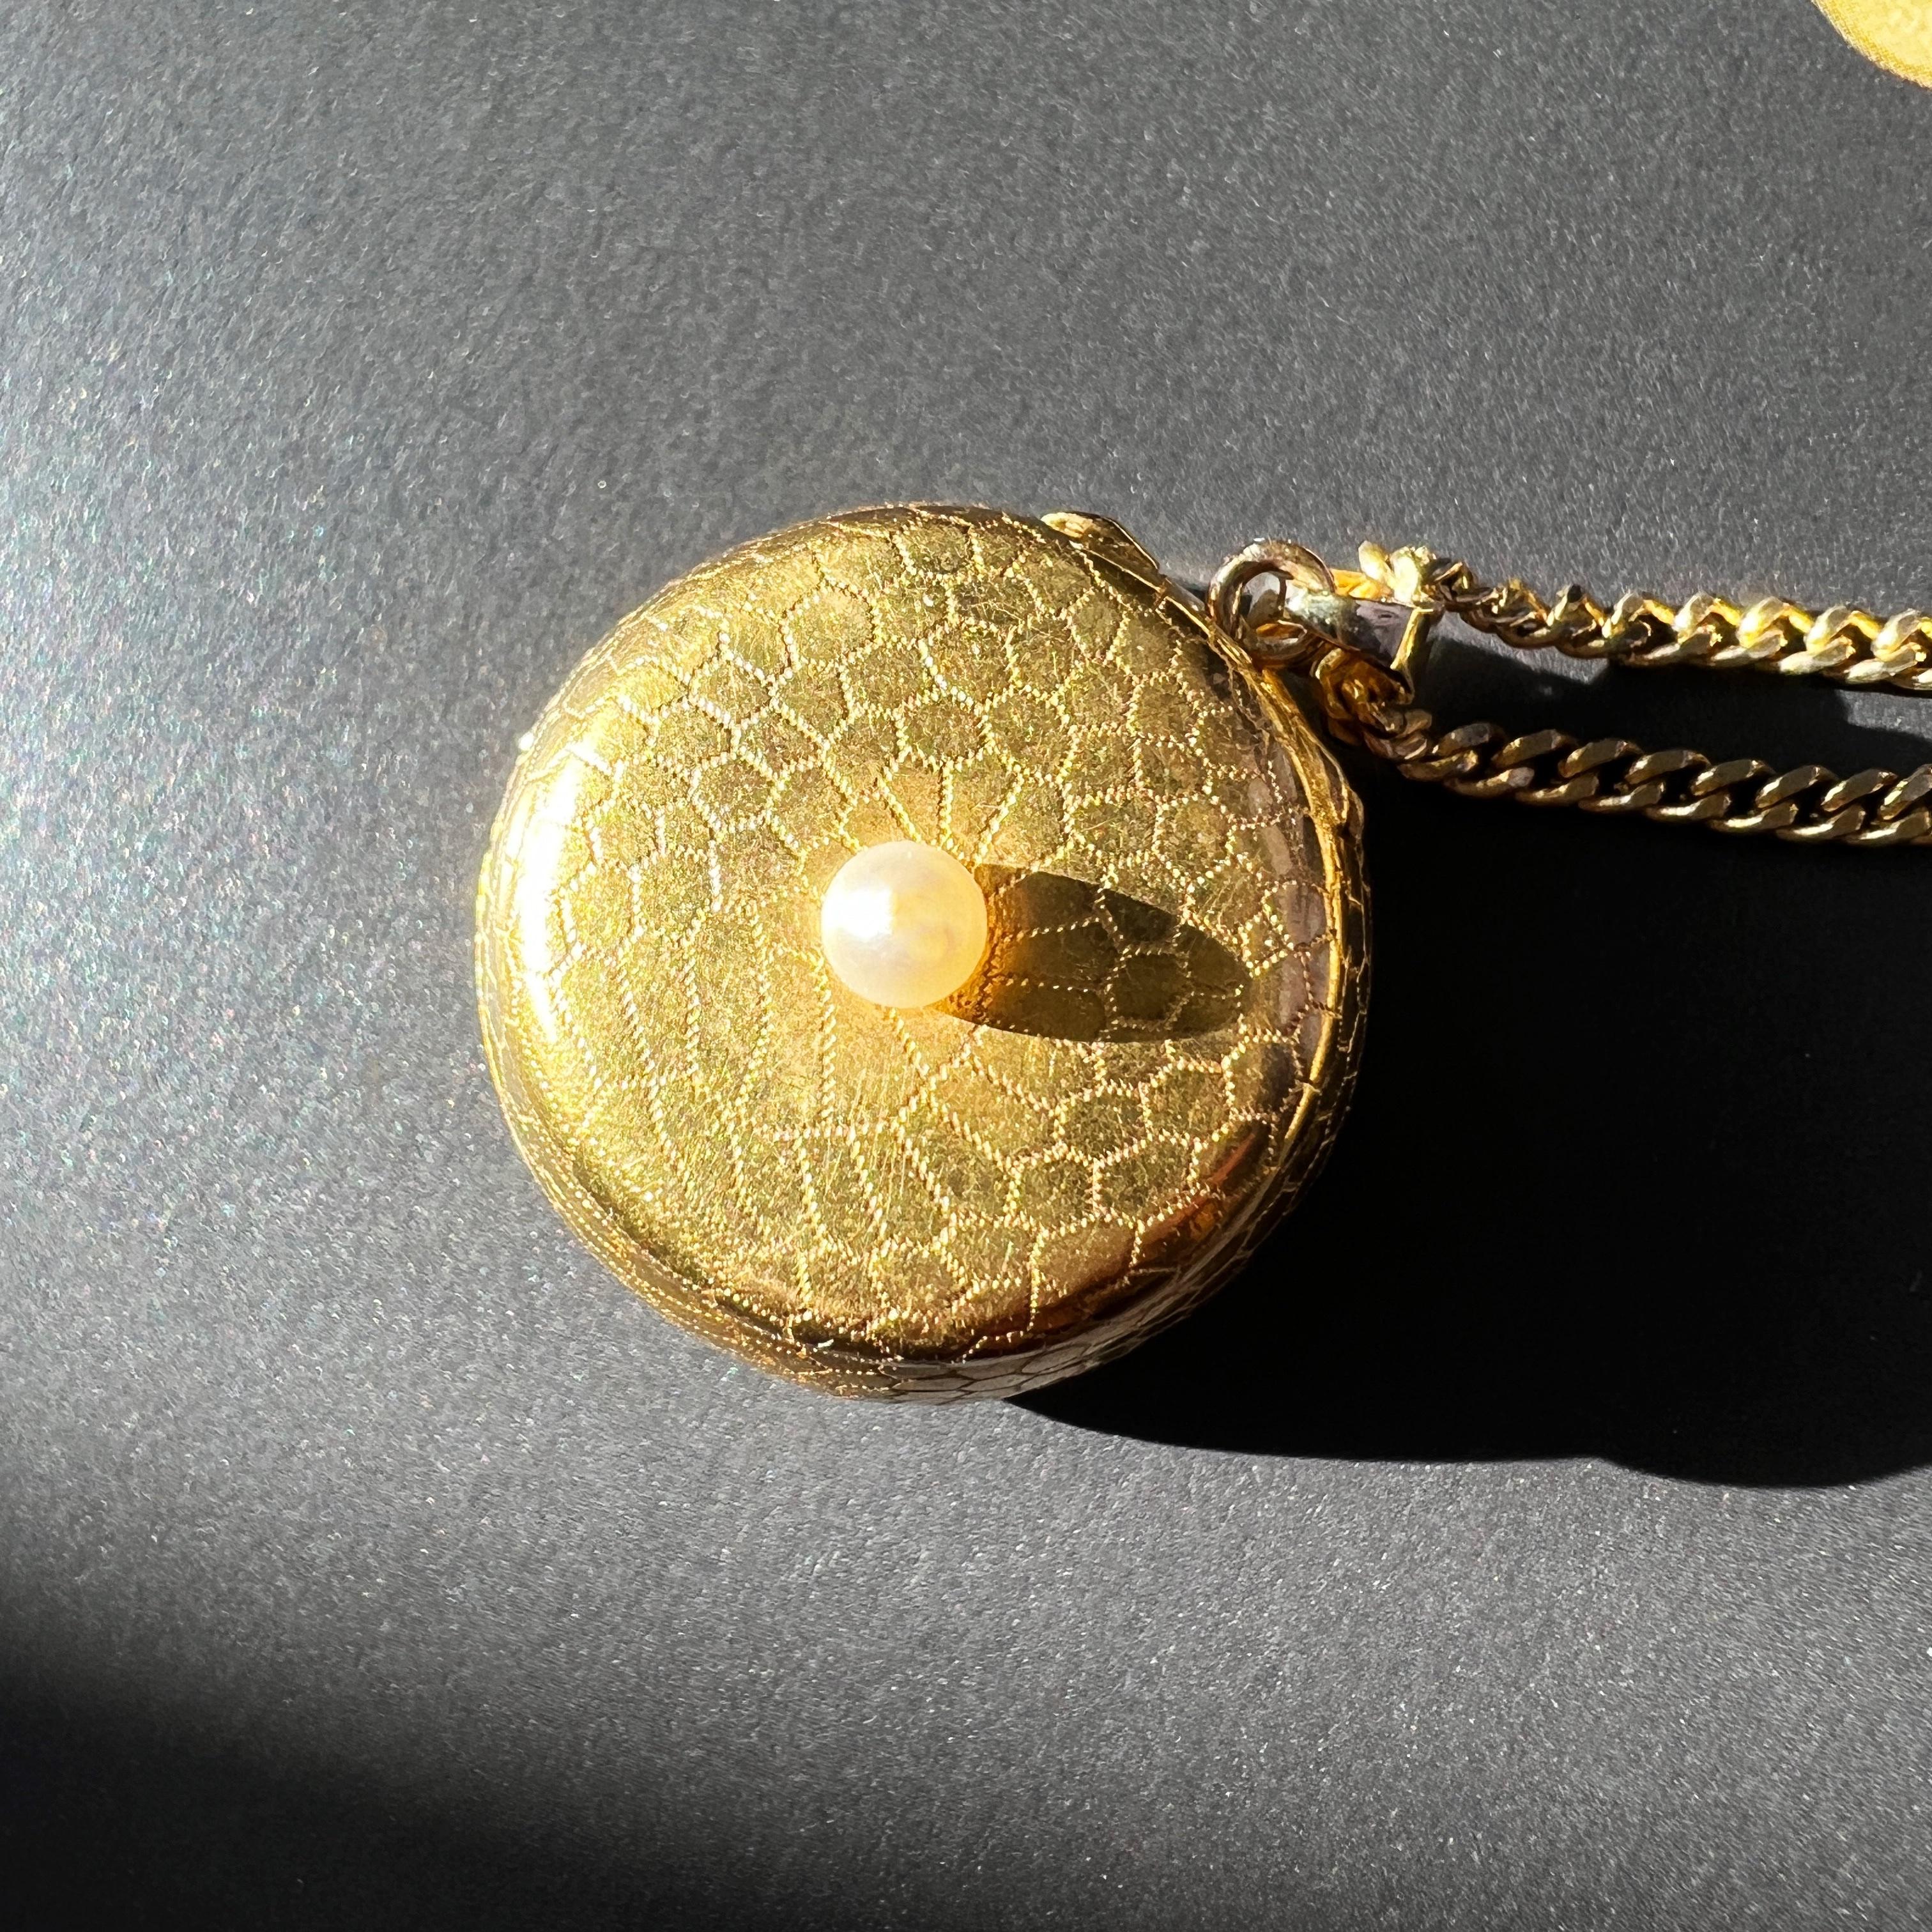 Zum Verkauf steht ein sehr seltener französischer, antiker Anhänger aus 18-karätigem Gold, der mit komplizierten geometrischen Goldmotiven verziert ist, die an zarte Honigmuster erinnern.

Wenn man seine Geheimnisse lüftet, kommt ein verstecktes